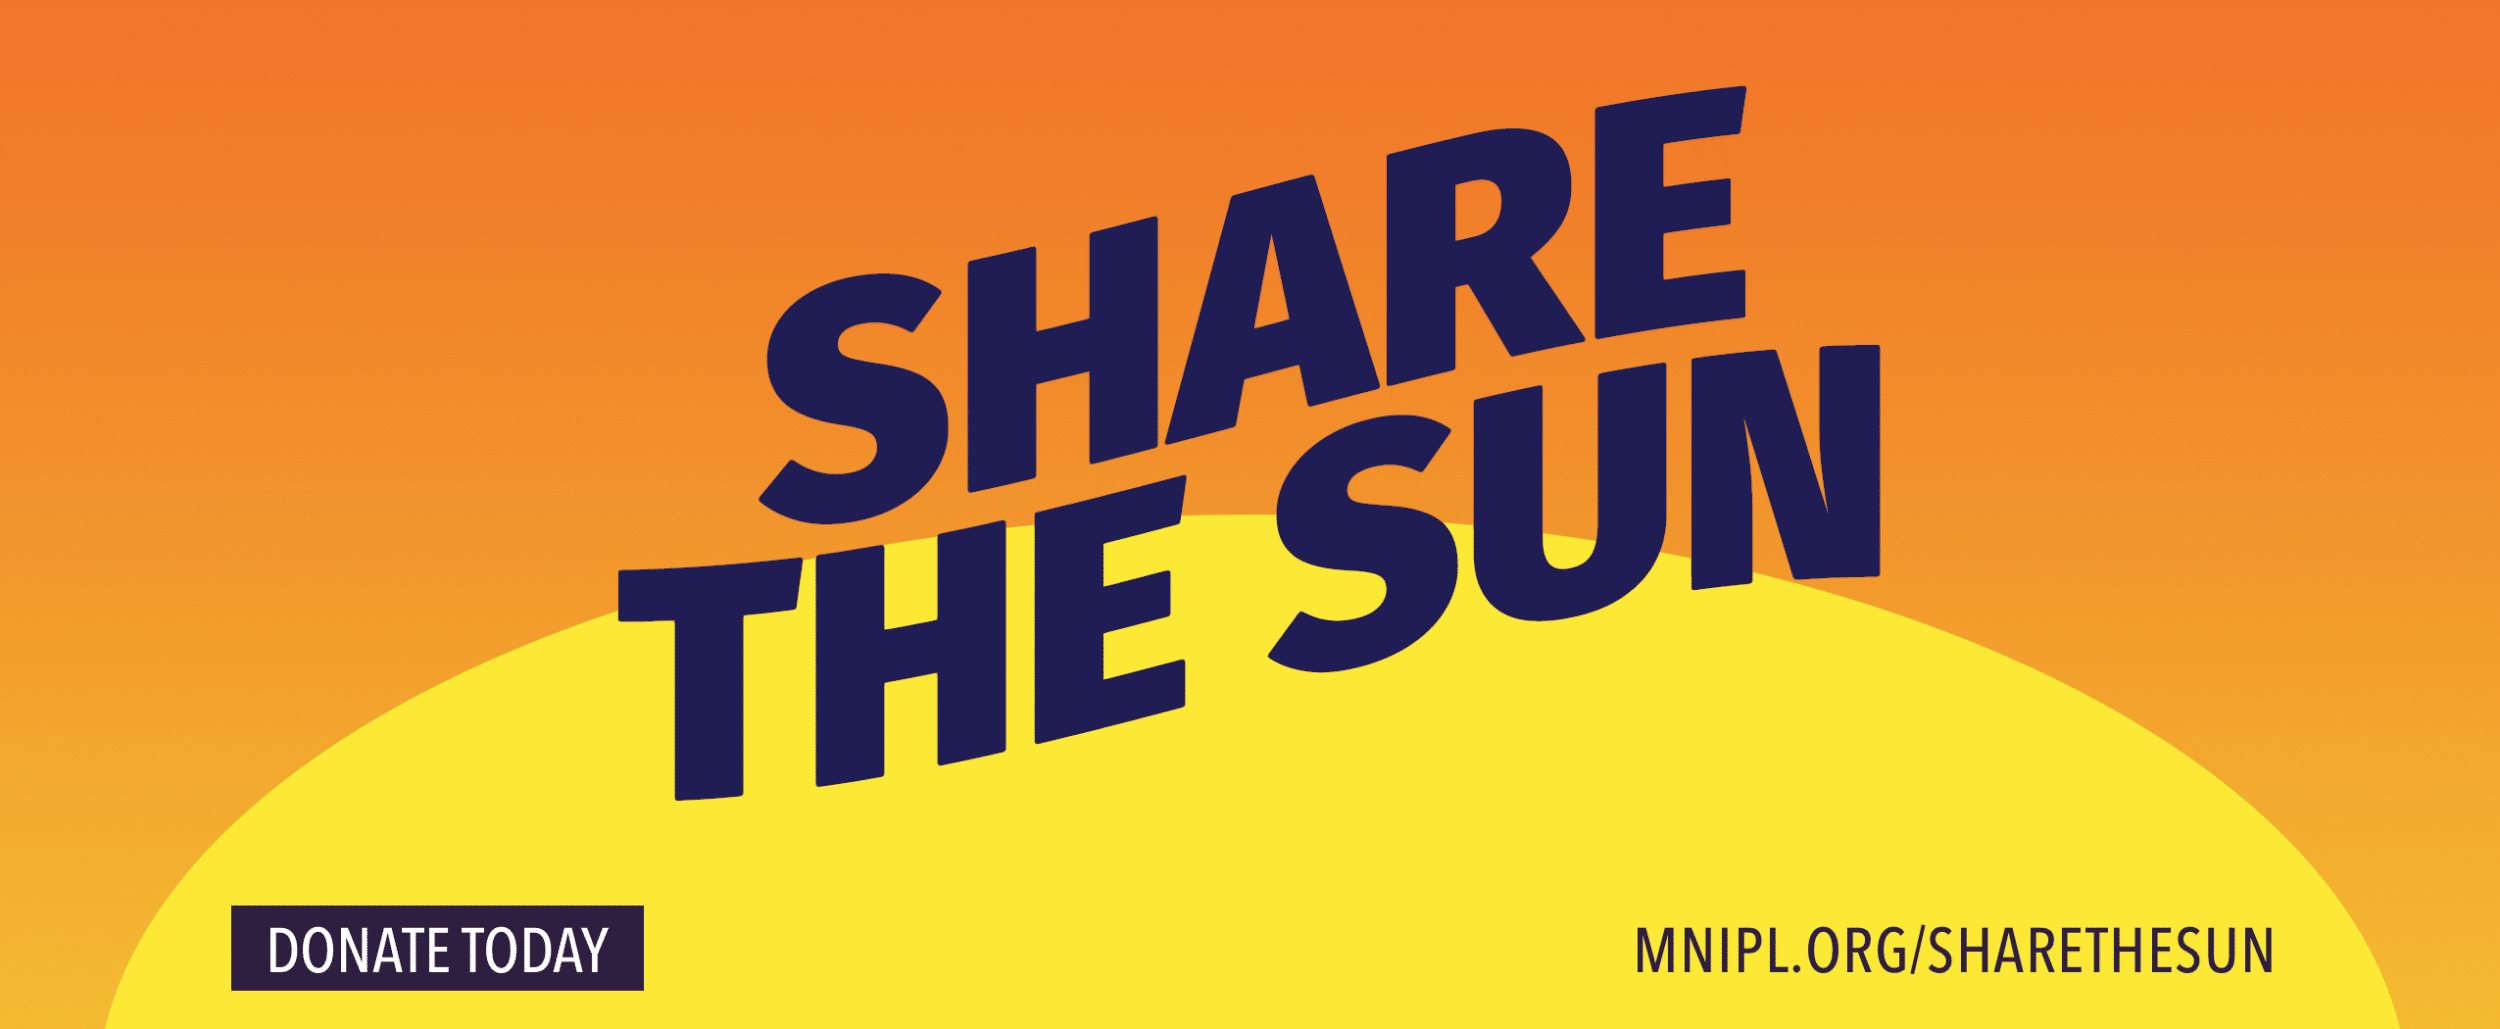 MNIPL-share-the-sun